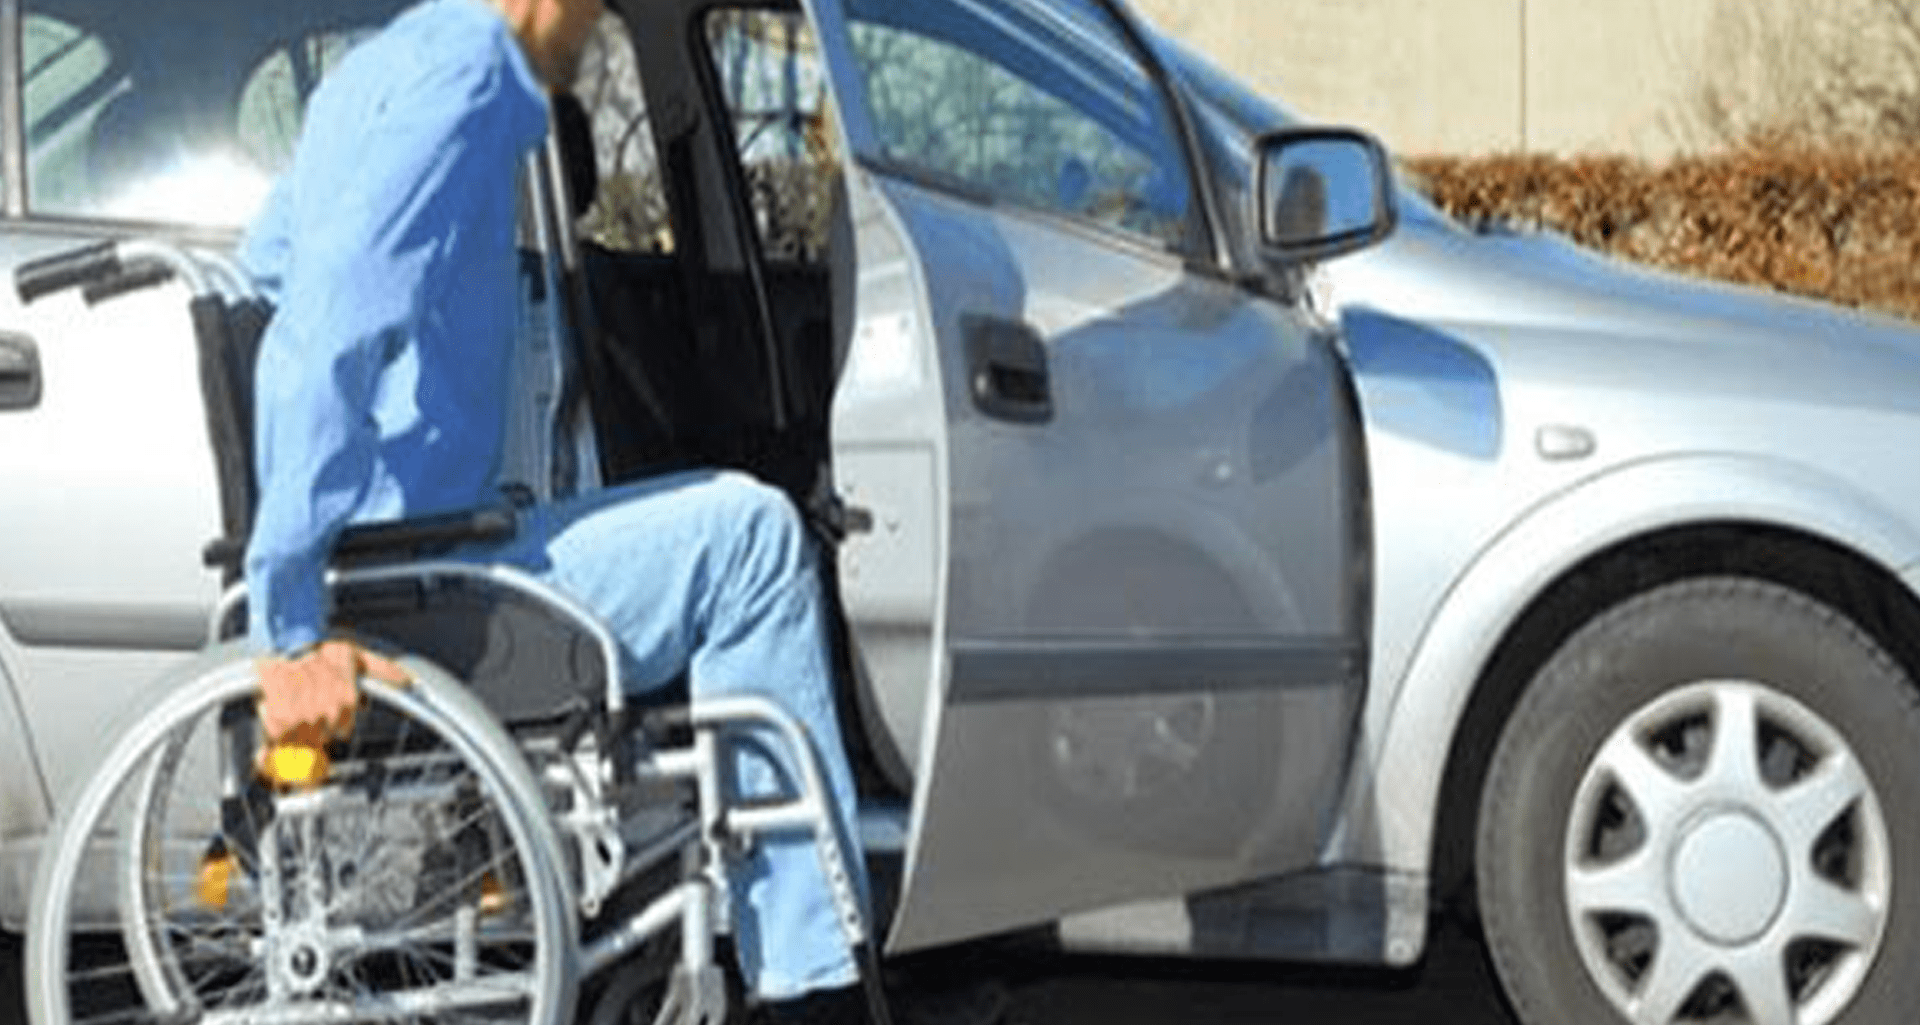 Engelli araç alımına Maliye Bakanlığından kısıtlama getiriliyor